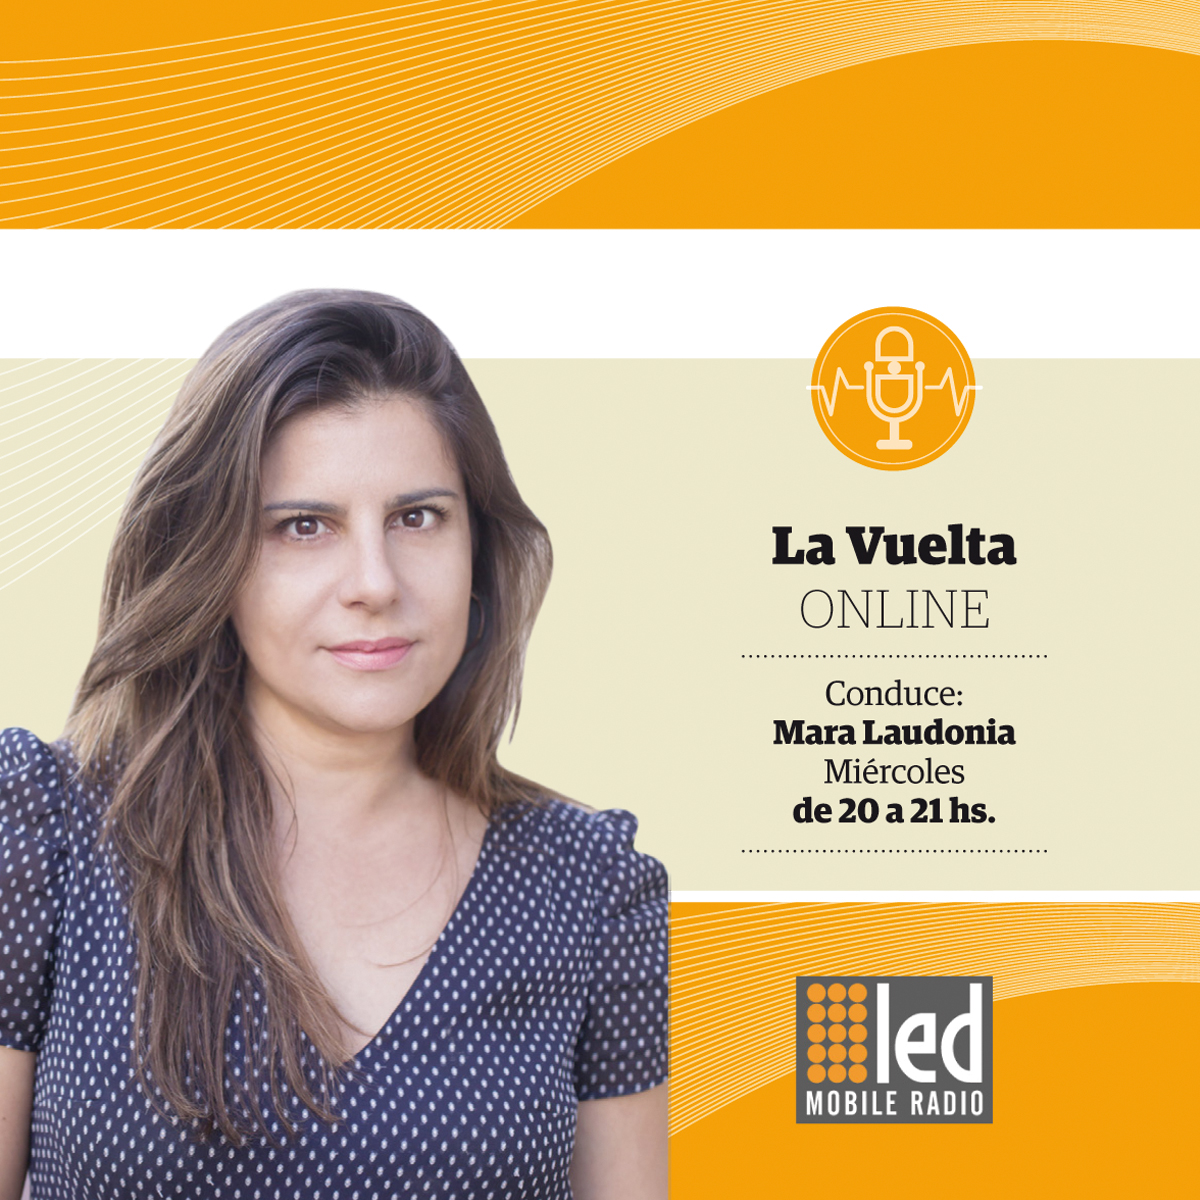 #Podcast La Vuelta Online | 23.05: #Economia @rcas1 #ImagenPolitica @DanielaAruj y el Dr A. Cattaneo